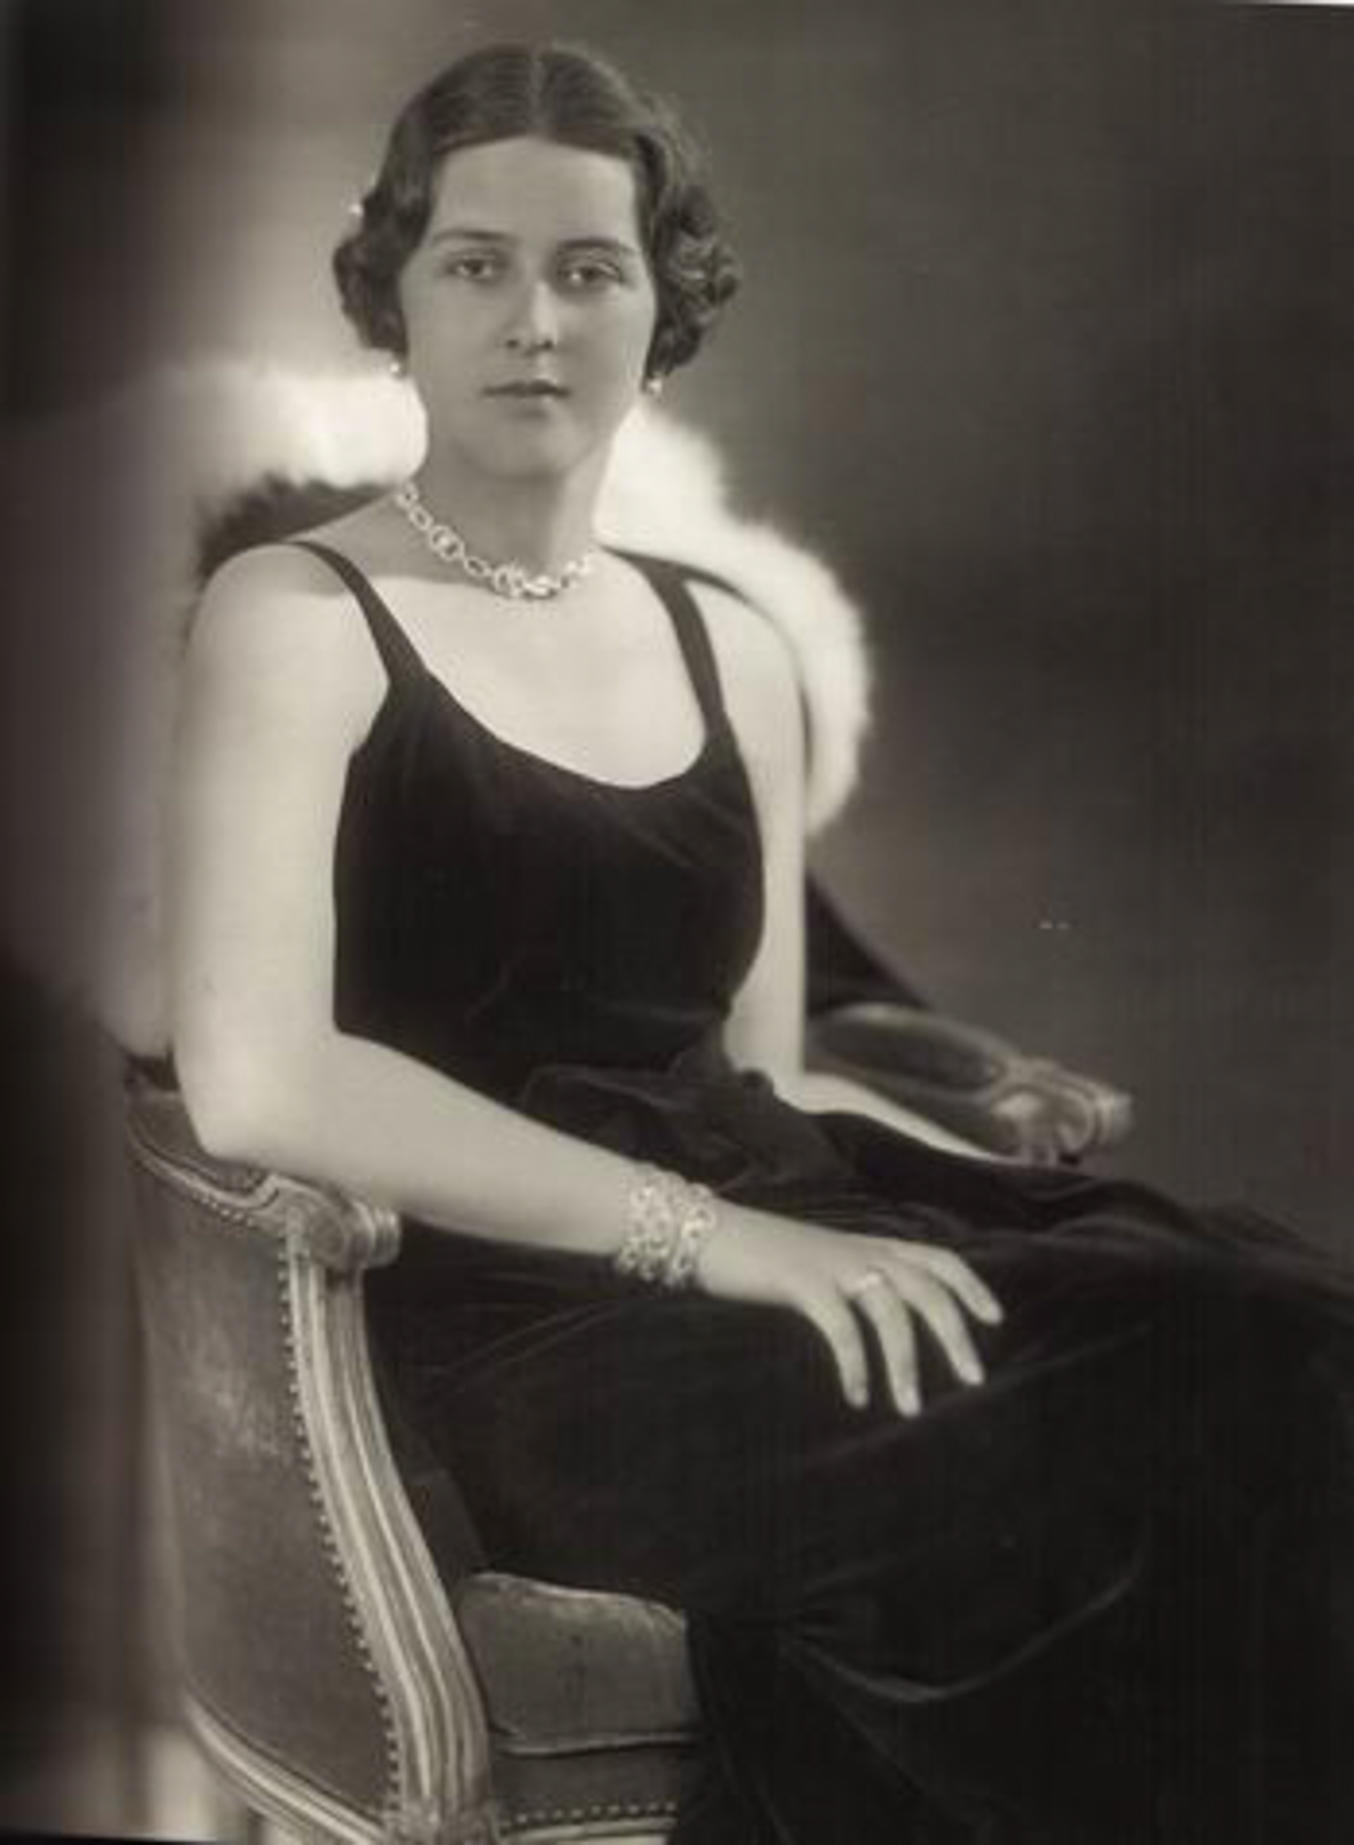 Cécile est décédée tragiquement dans un accident d'avion en 1937.